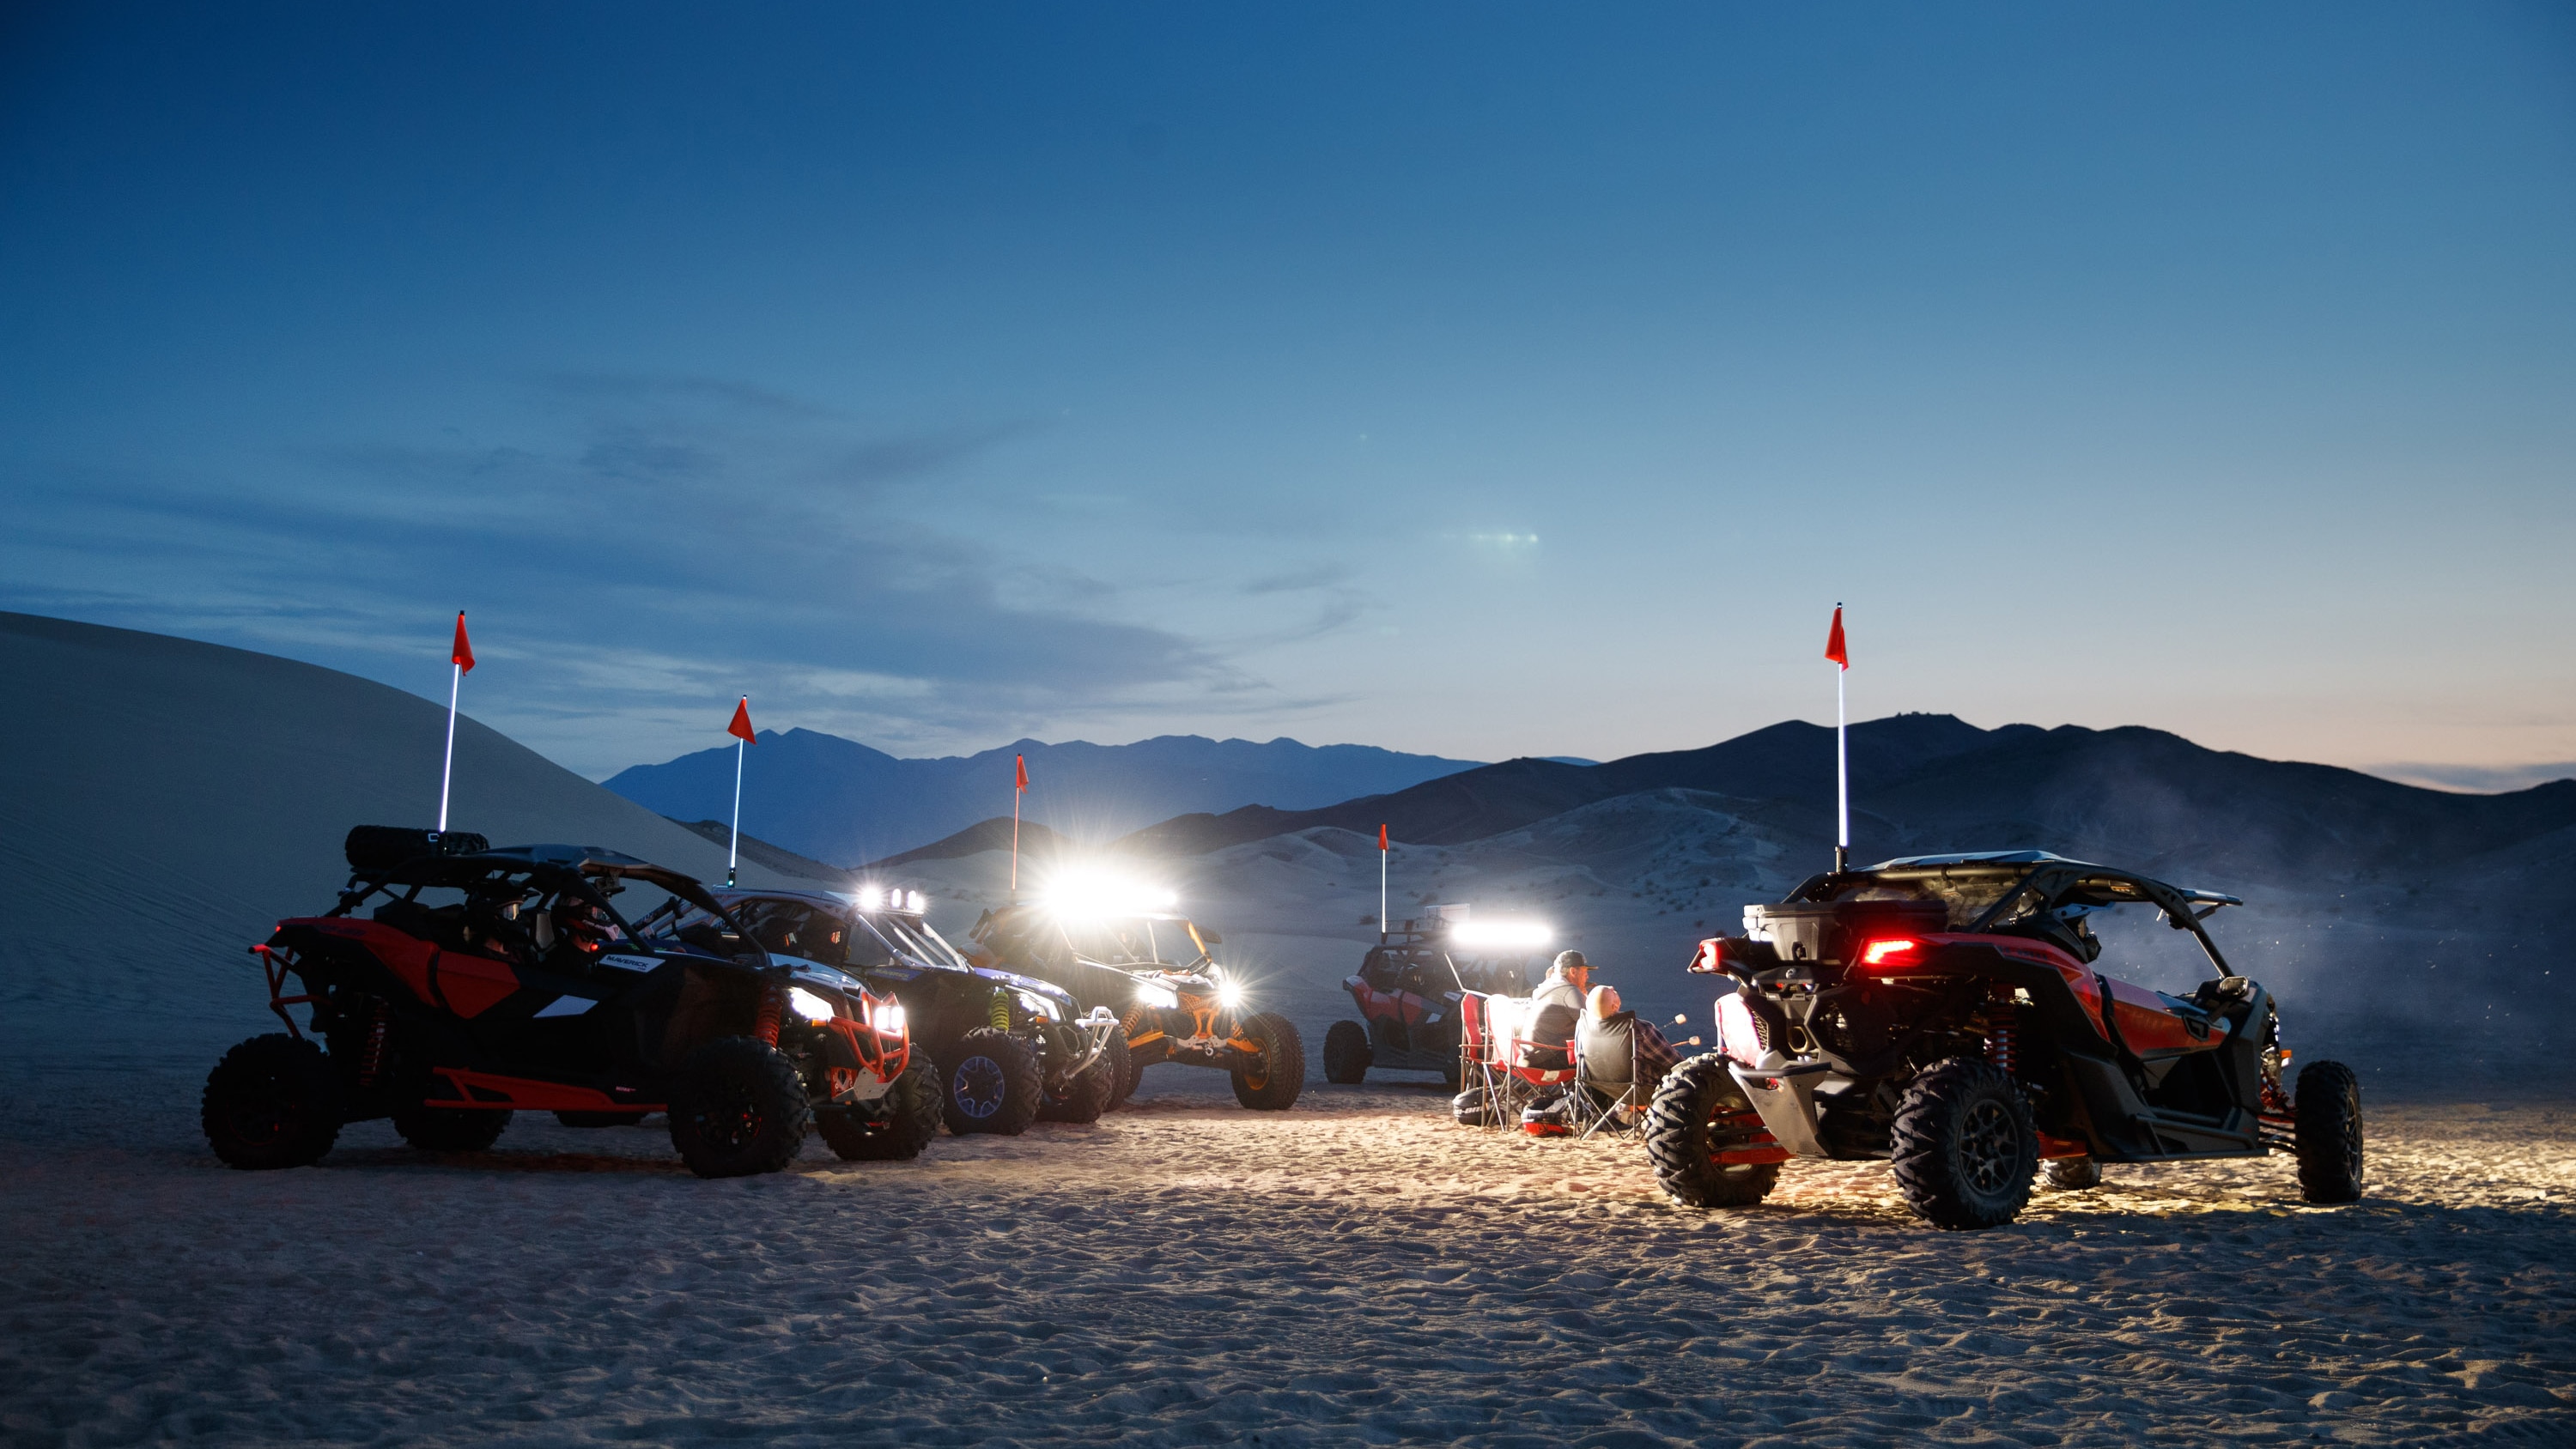  Pet modelov Maverick ponoči v puščavi